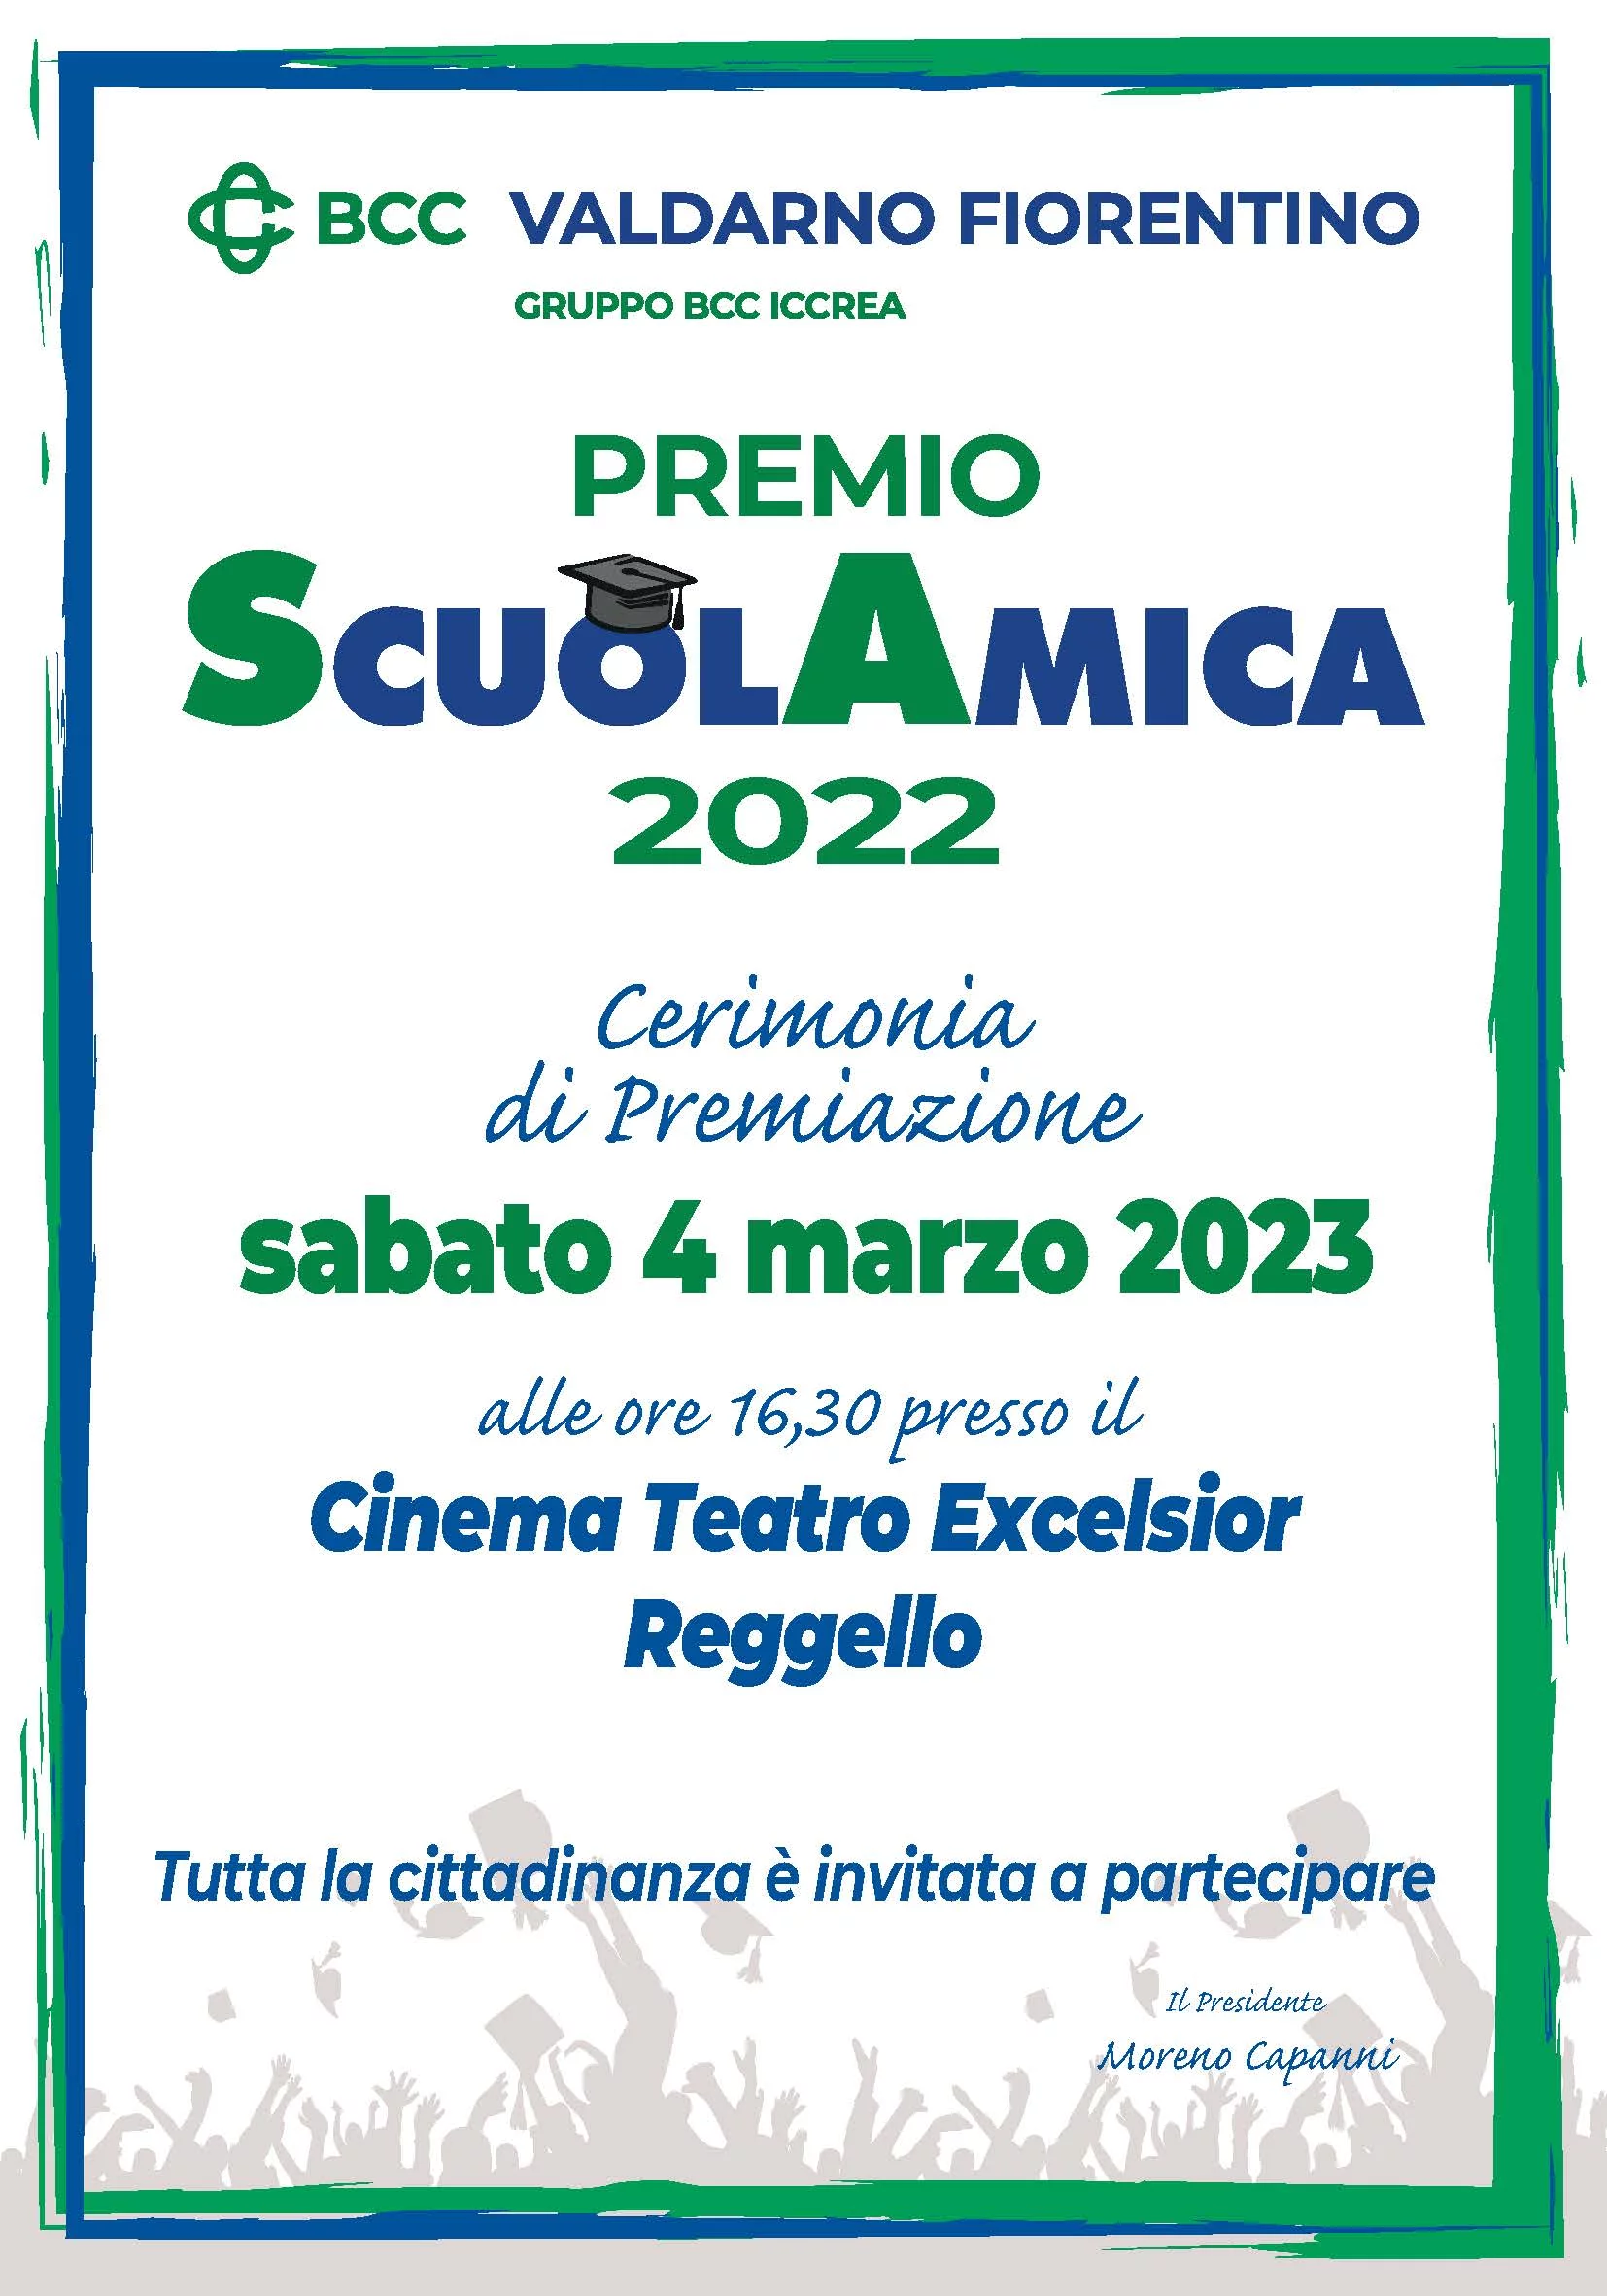 Premiazione SCUOLAMICA 2022: sabato 4 marzo ore 16:30 presso il Teatro Excelsior di Reggello